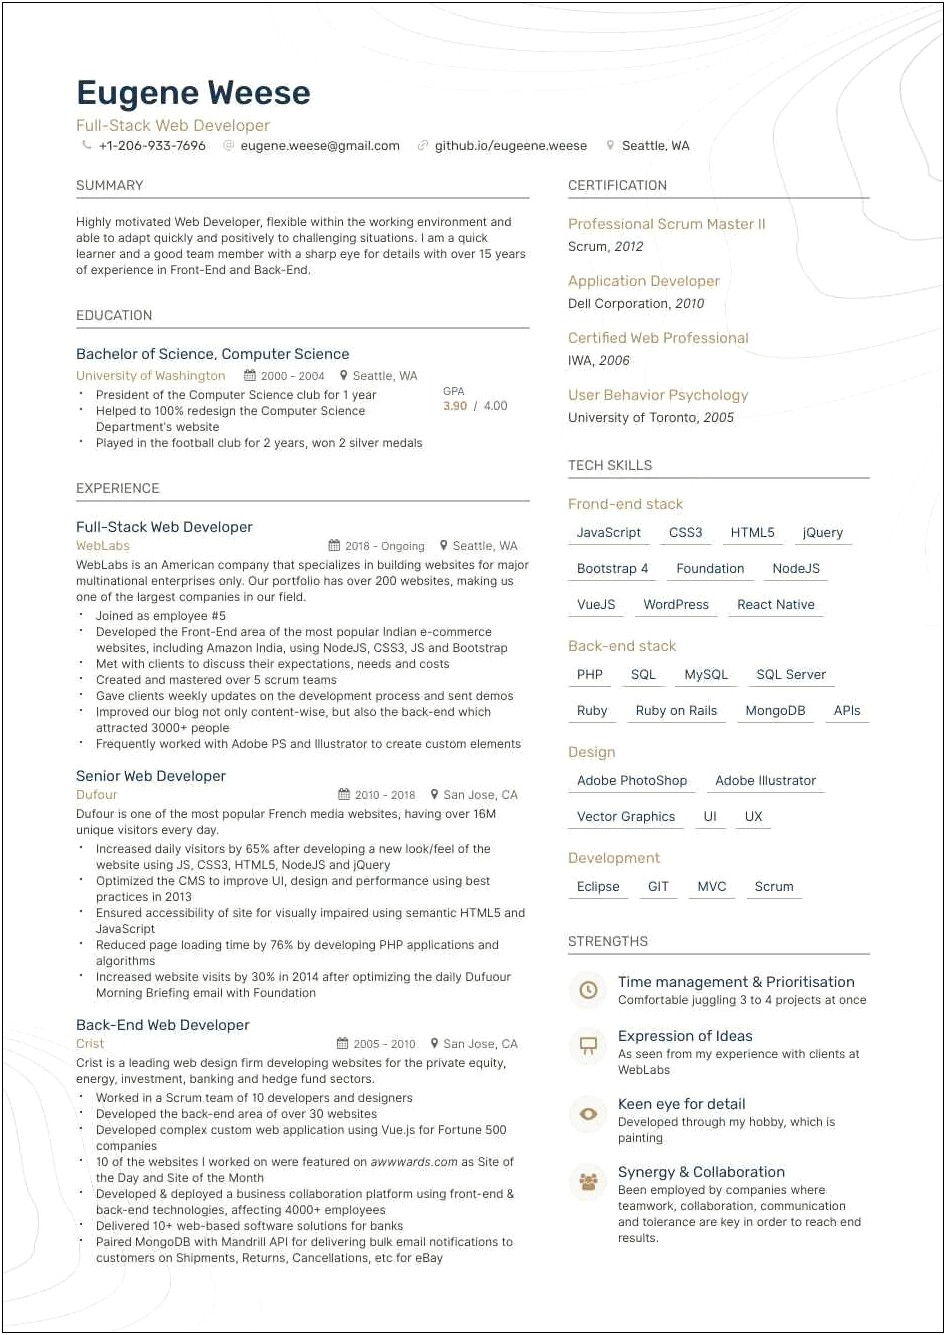 Web Developer Jobs 2010 Resume